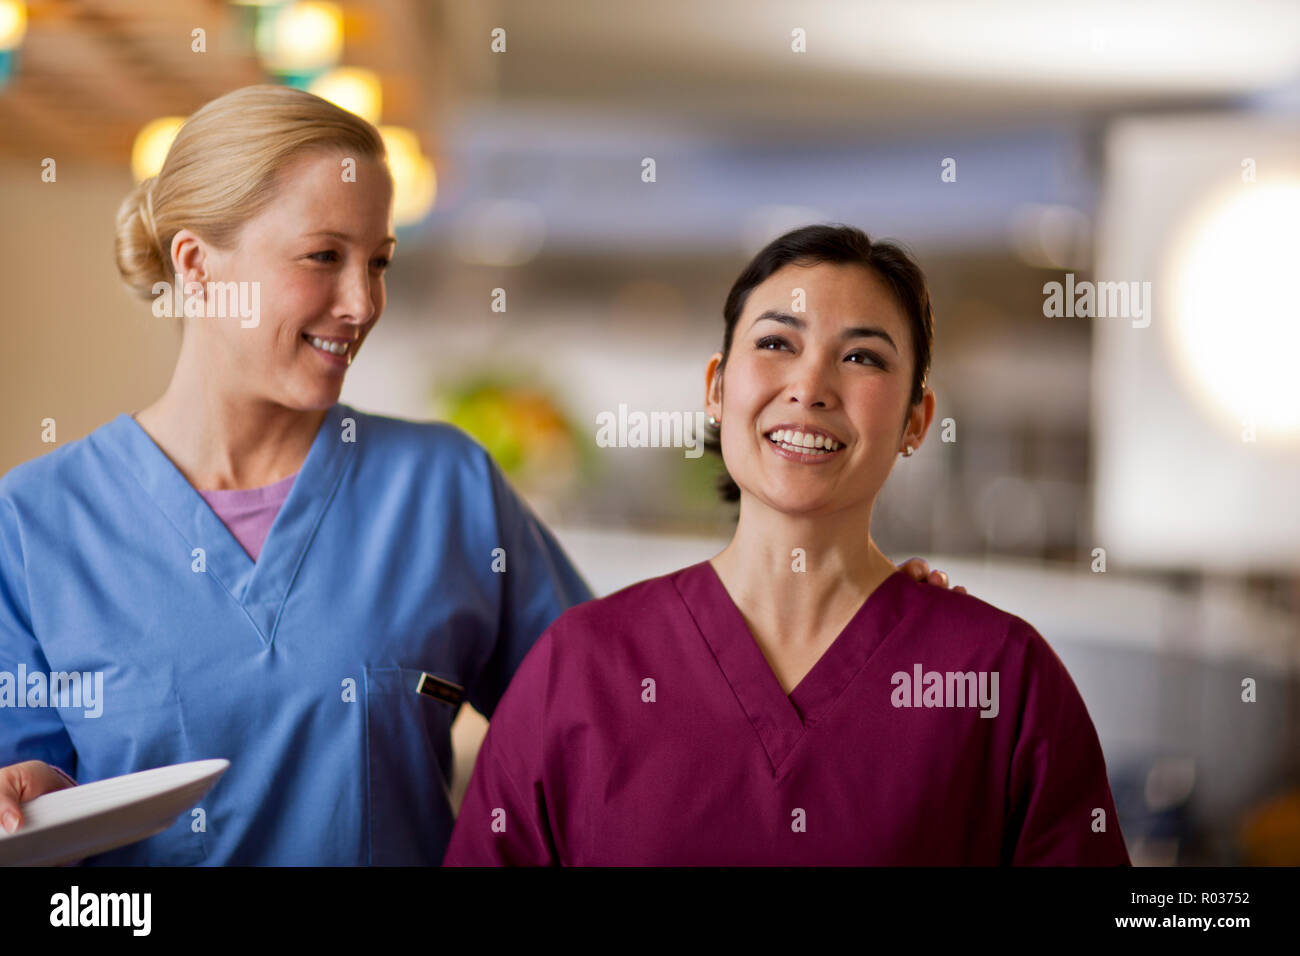 Lächelnde junge Krankenschwestern legt ihren Arm um ihre Kollegin wie sie in Linie warten Ihr Mittagessen aus dem Krankenhaus Kantine zu erhalten. Stockfoto